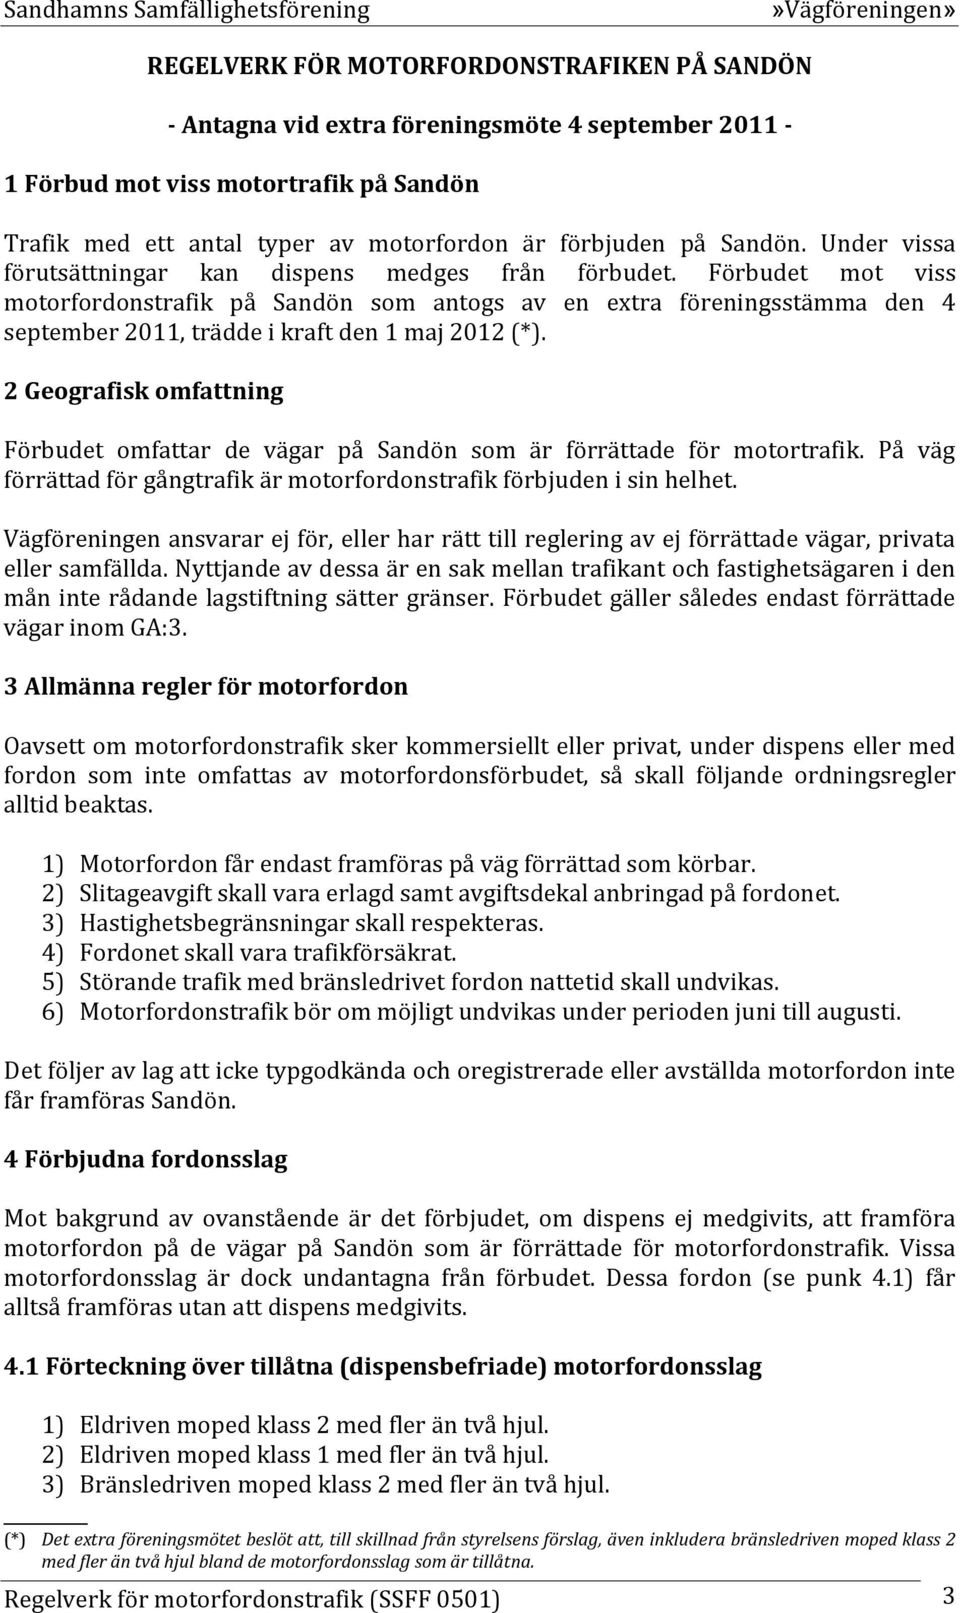 Förbudet mot viss motorfordonstrafik på Sandön som antogs av en extra föreningsstämma den 4 september 2011, trädde i kraft den 1 maj 2012 (*).